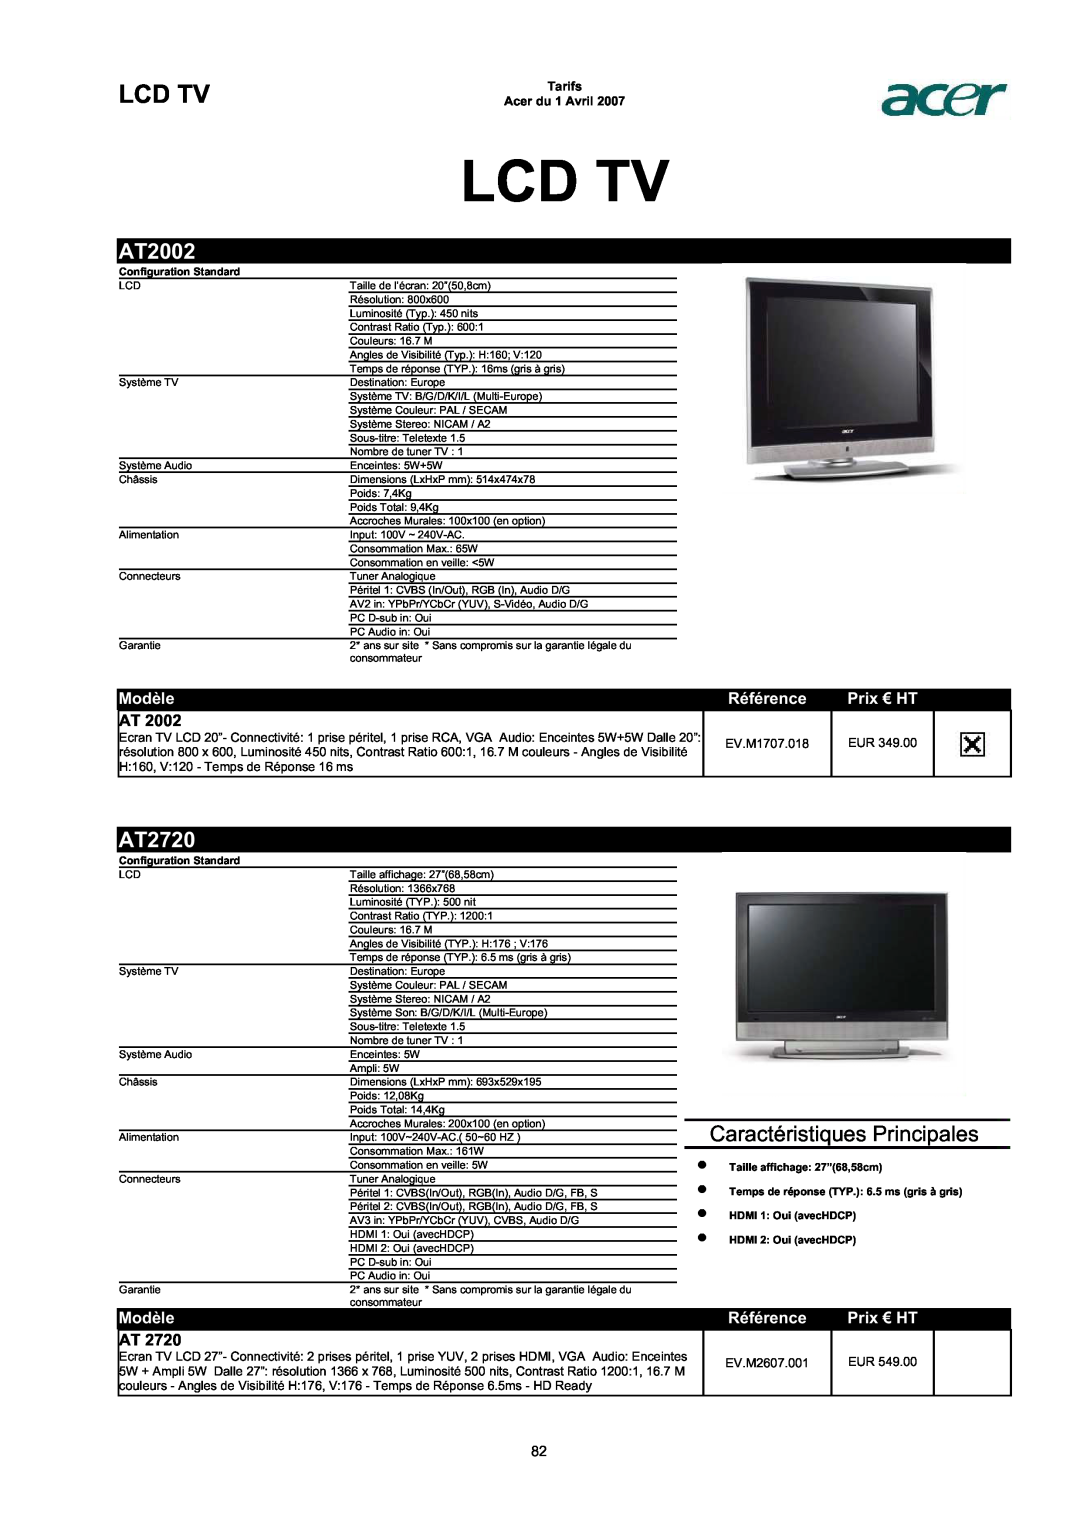 Acer AC713B-17 Lcd Tv, AT2002, AT2720, Caractéristiques Principales, Modèle, Référence, Prix € HT, Tarifs Acer du 1 Avril 